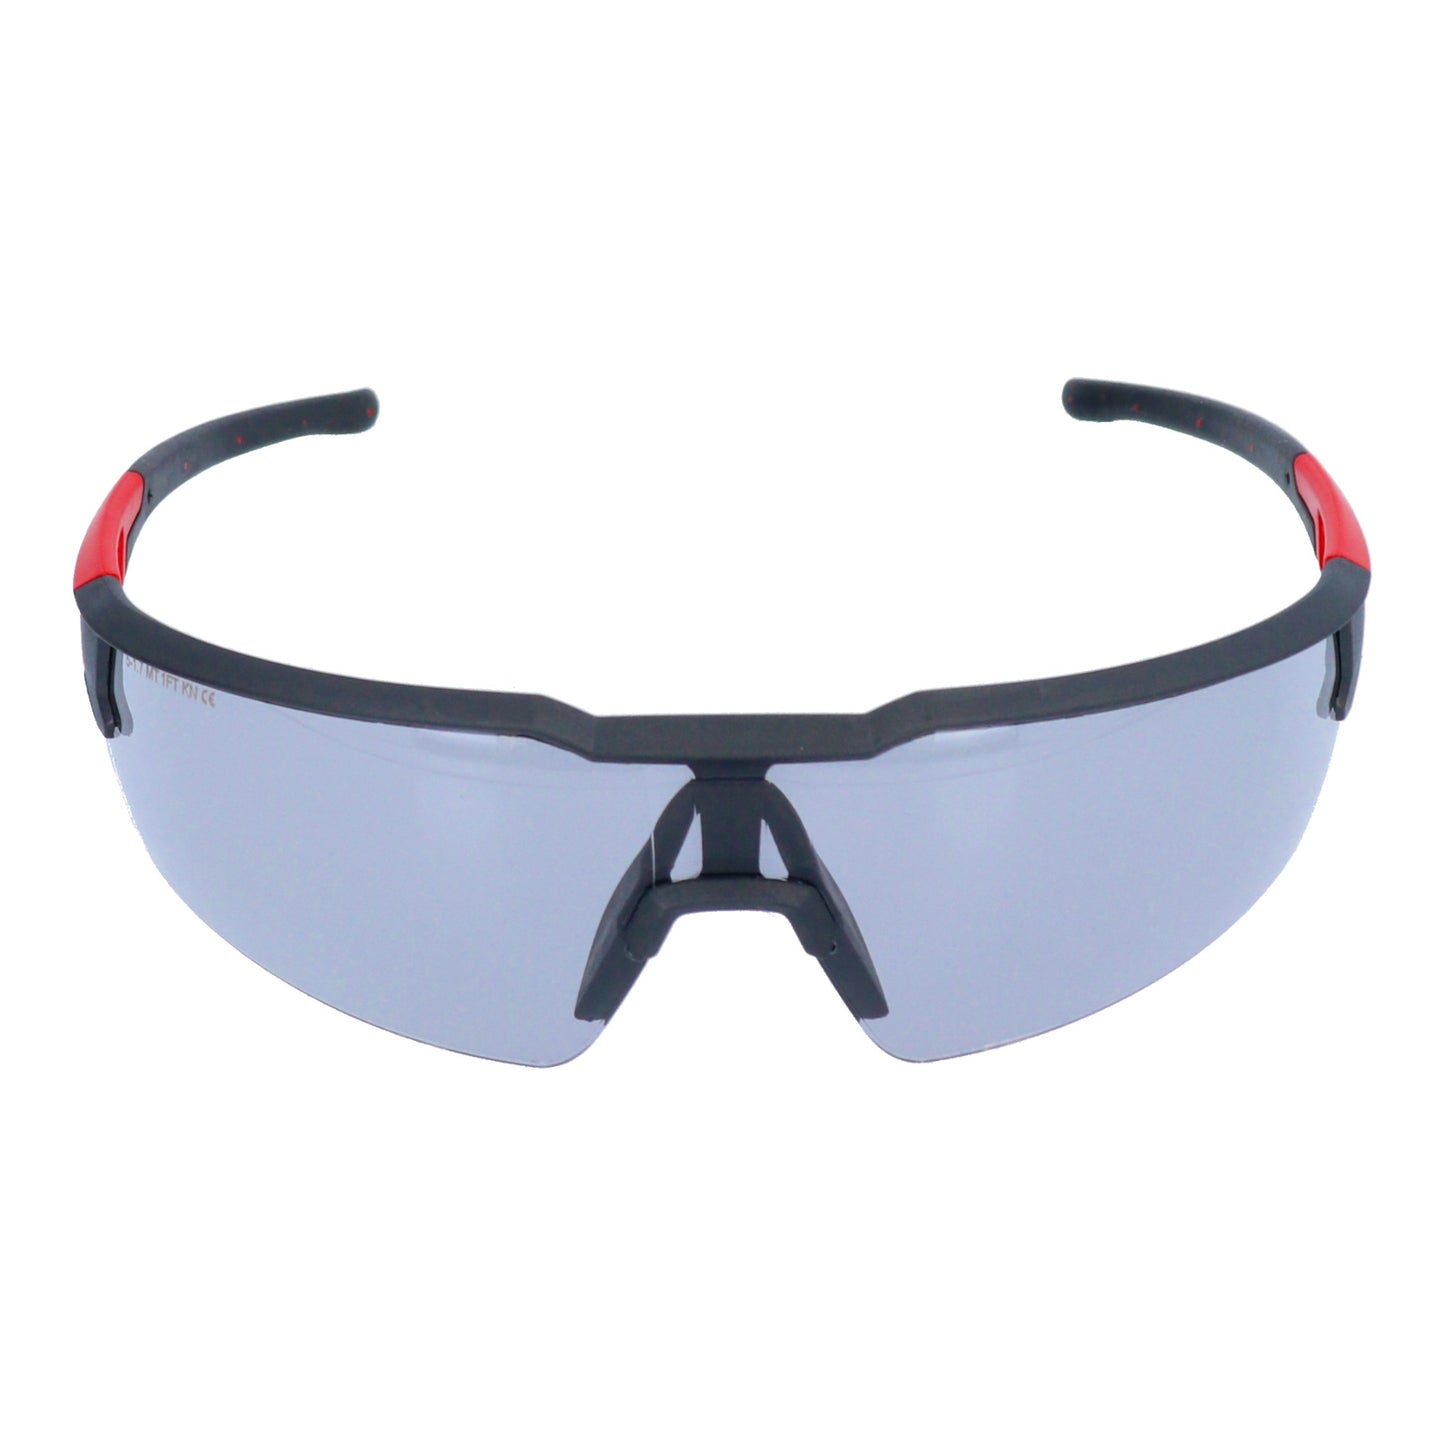 Milwaukee Enhanced Safety Glasses Grey Schutzbrille ( 4932478907 ) grau getönte Ausführung